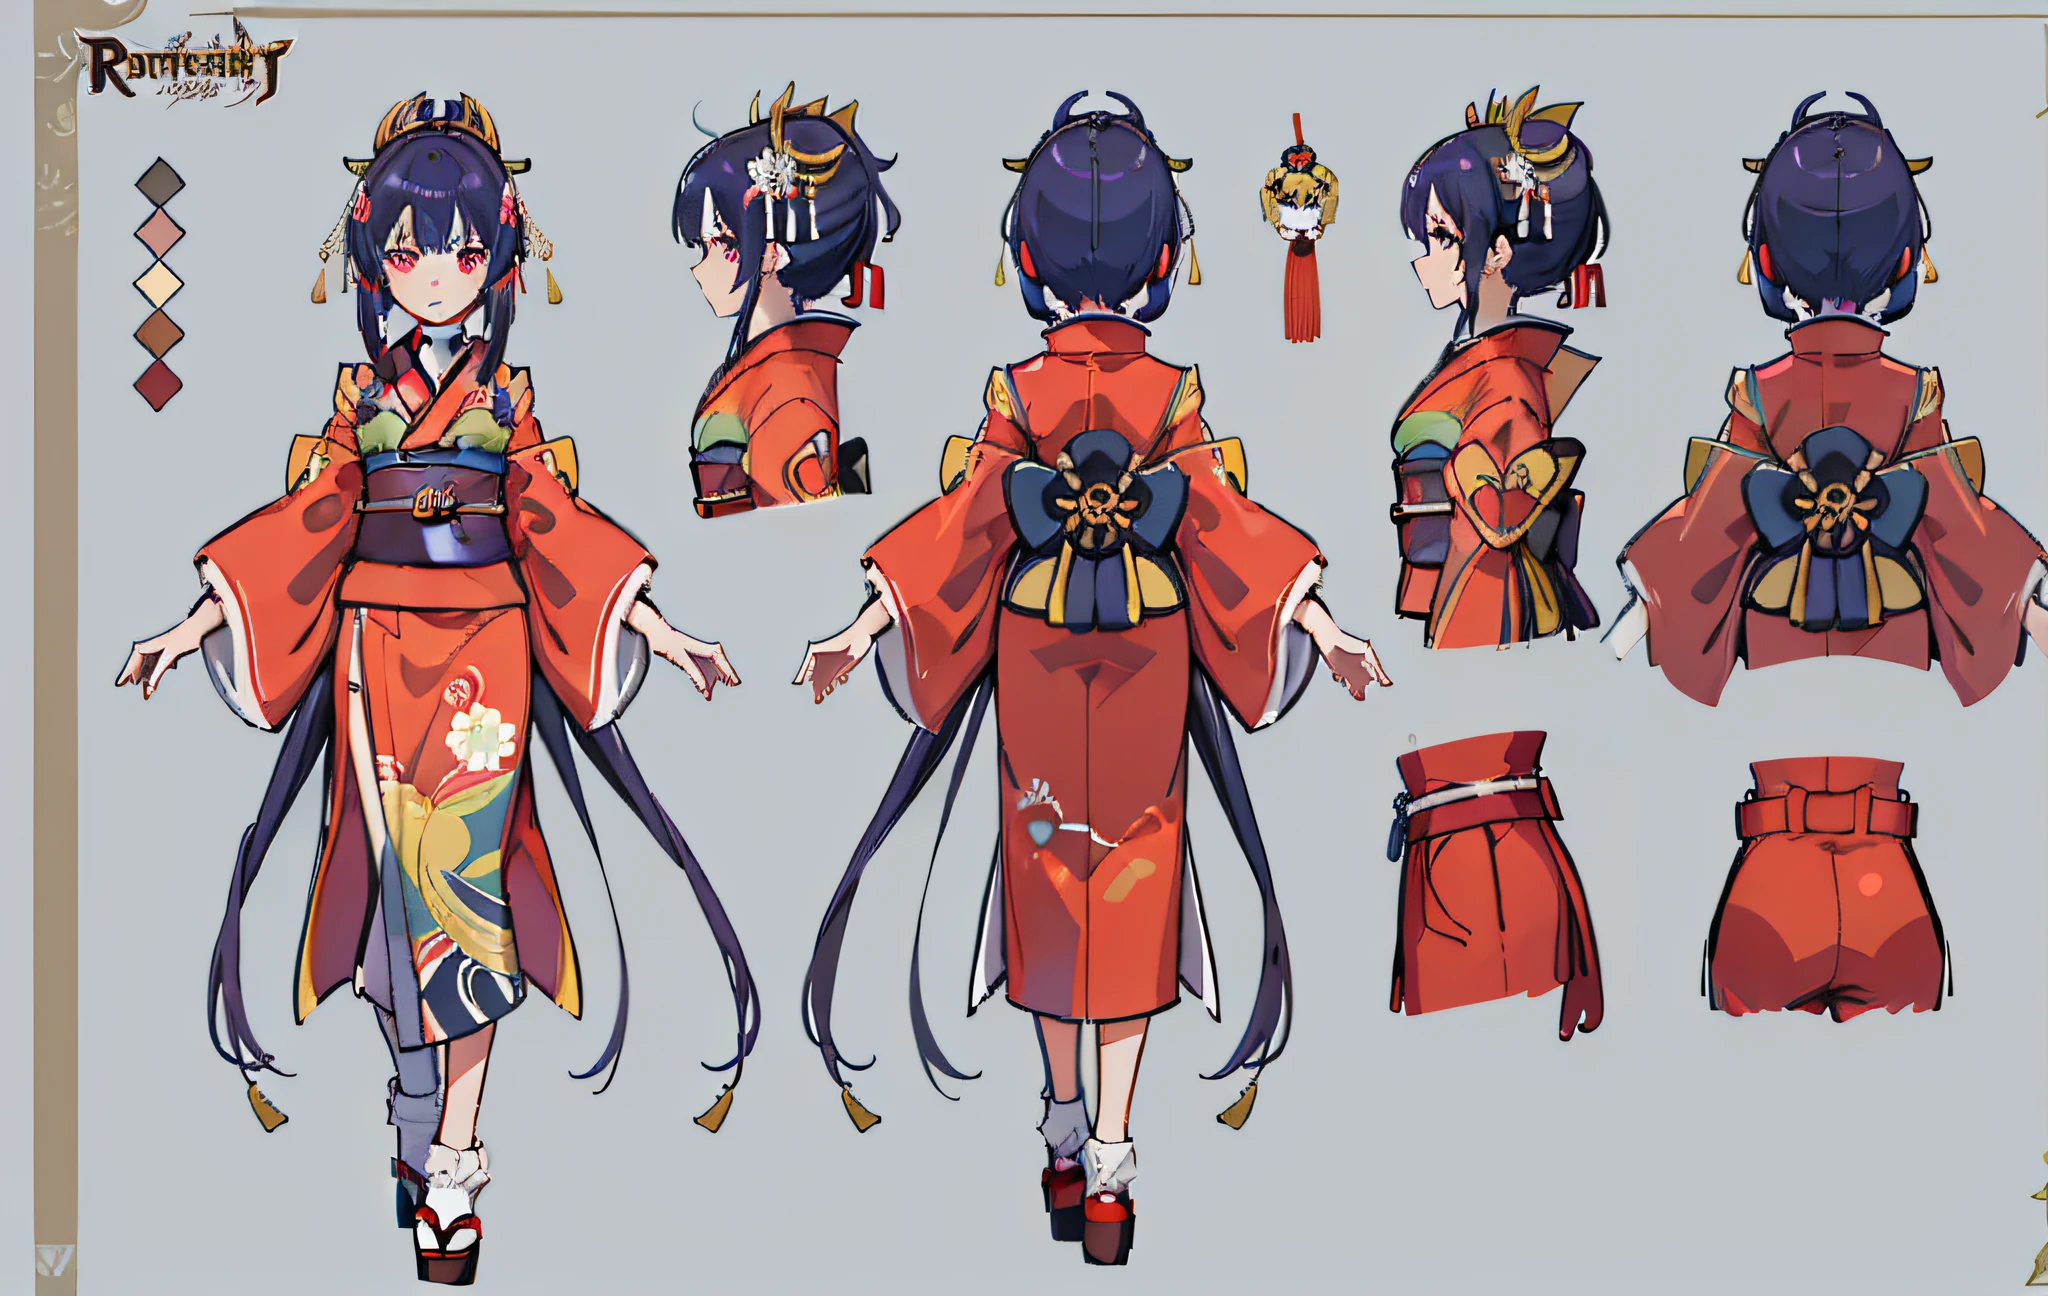 1人, 參考表, (幻想角色设计, 正面, 后退, 边) 女孩, 和服, 日本女神, royal 和服